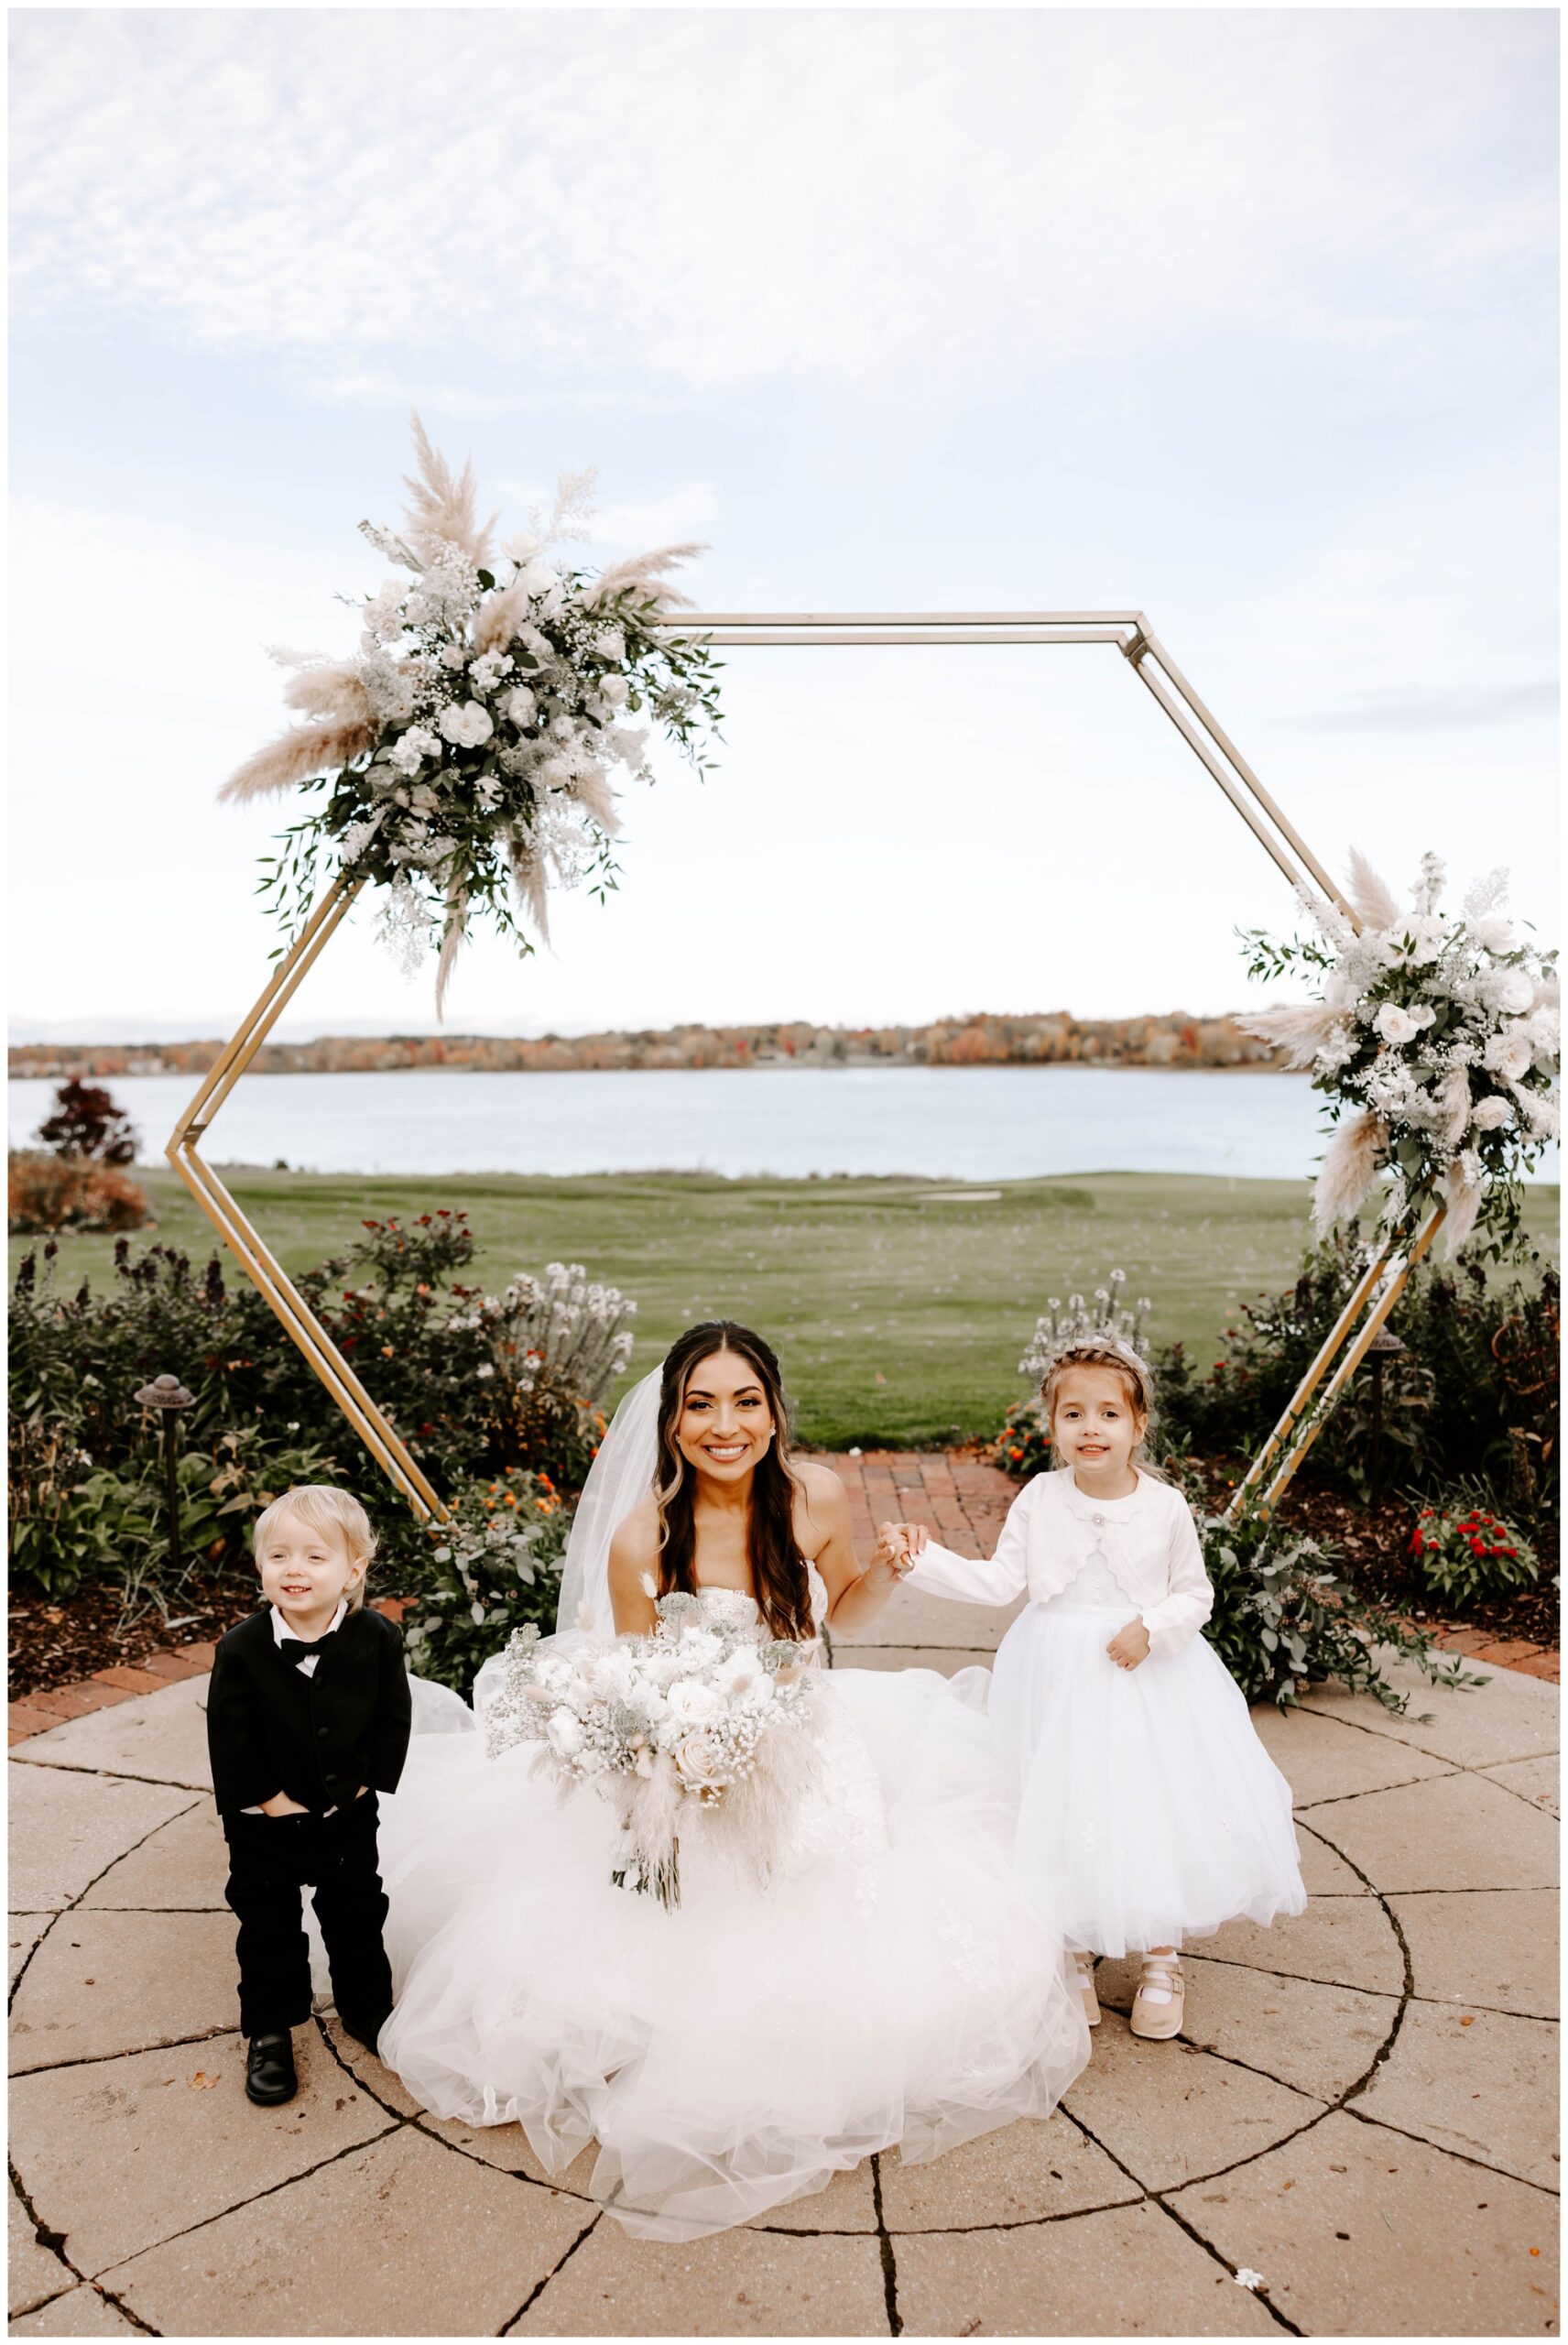 Ohio wedding photographer; Rachel Wehan Photography